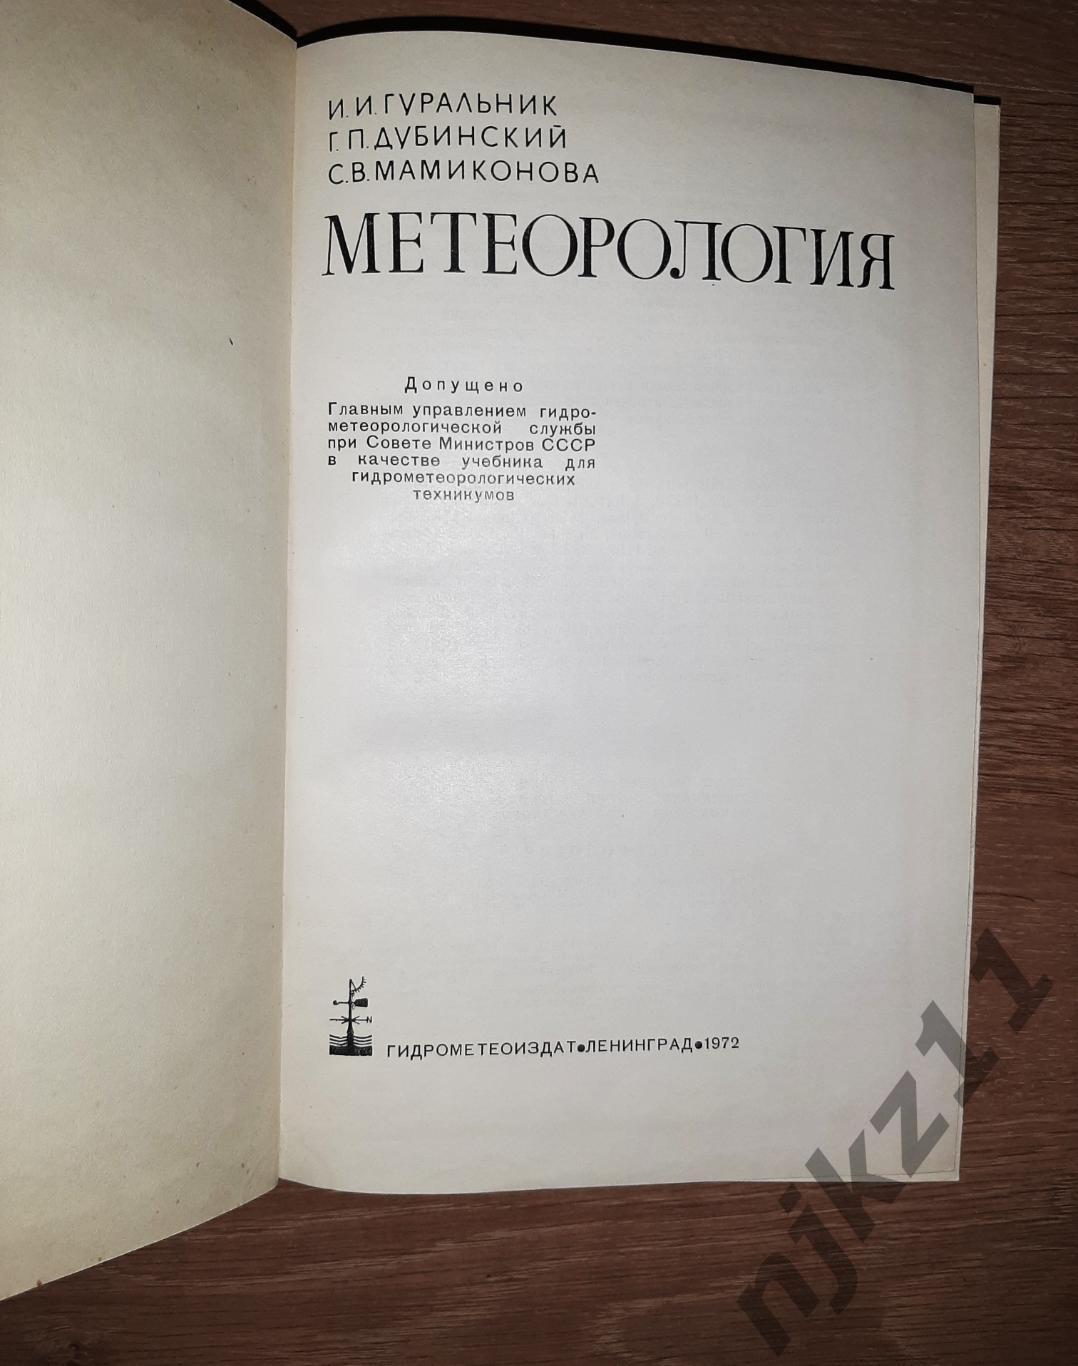 Гуральник МЕТЕОРОЛОГИЯ 1972г редкий учебник СССР 1